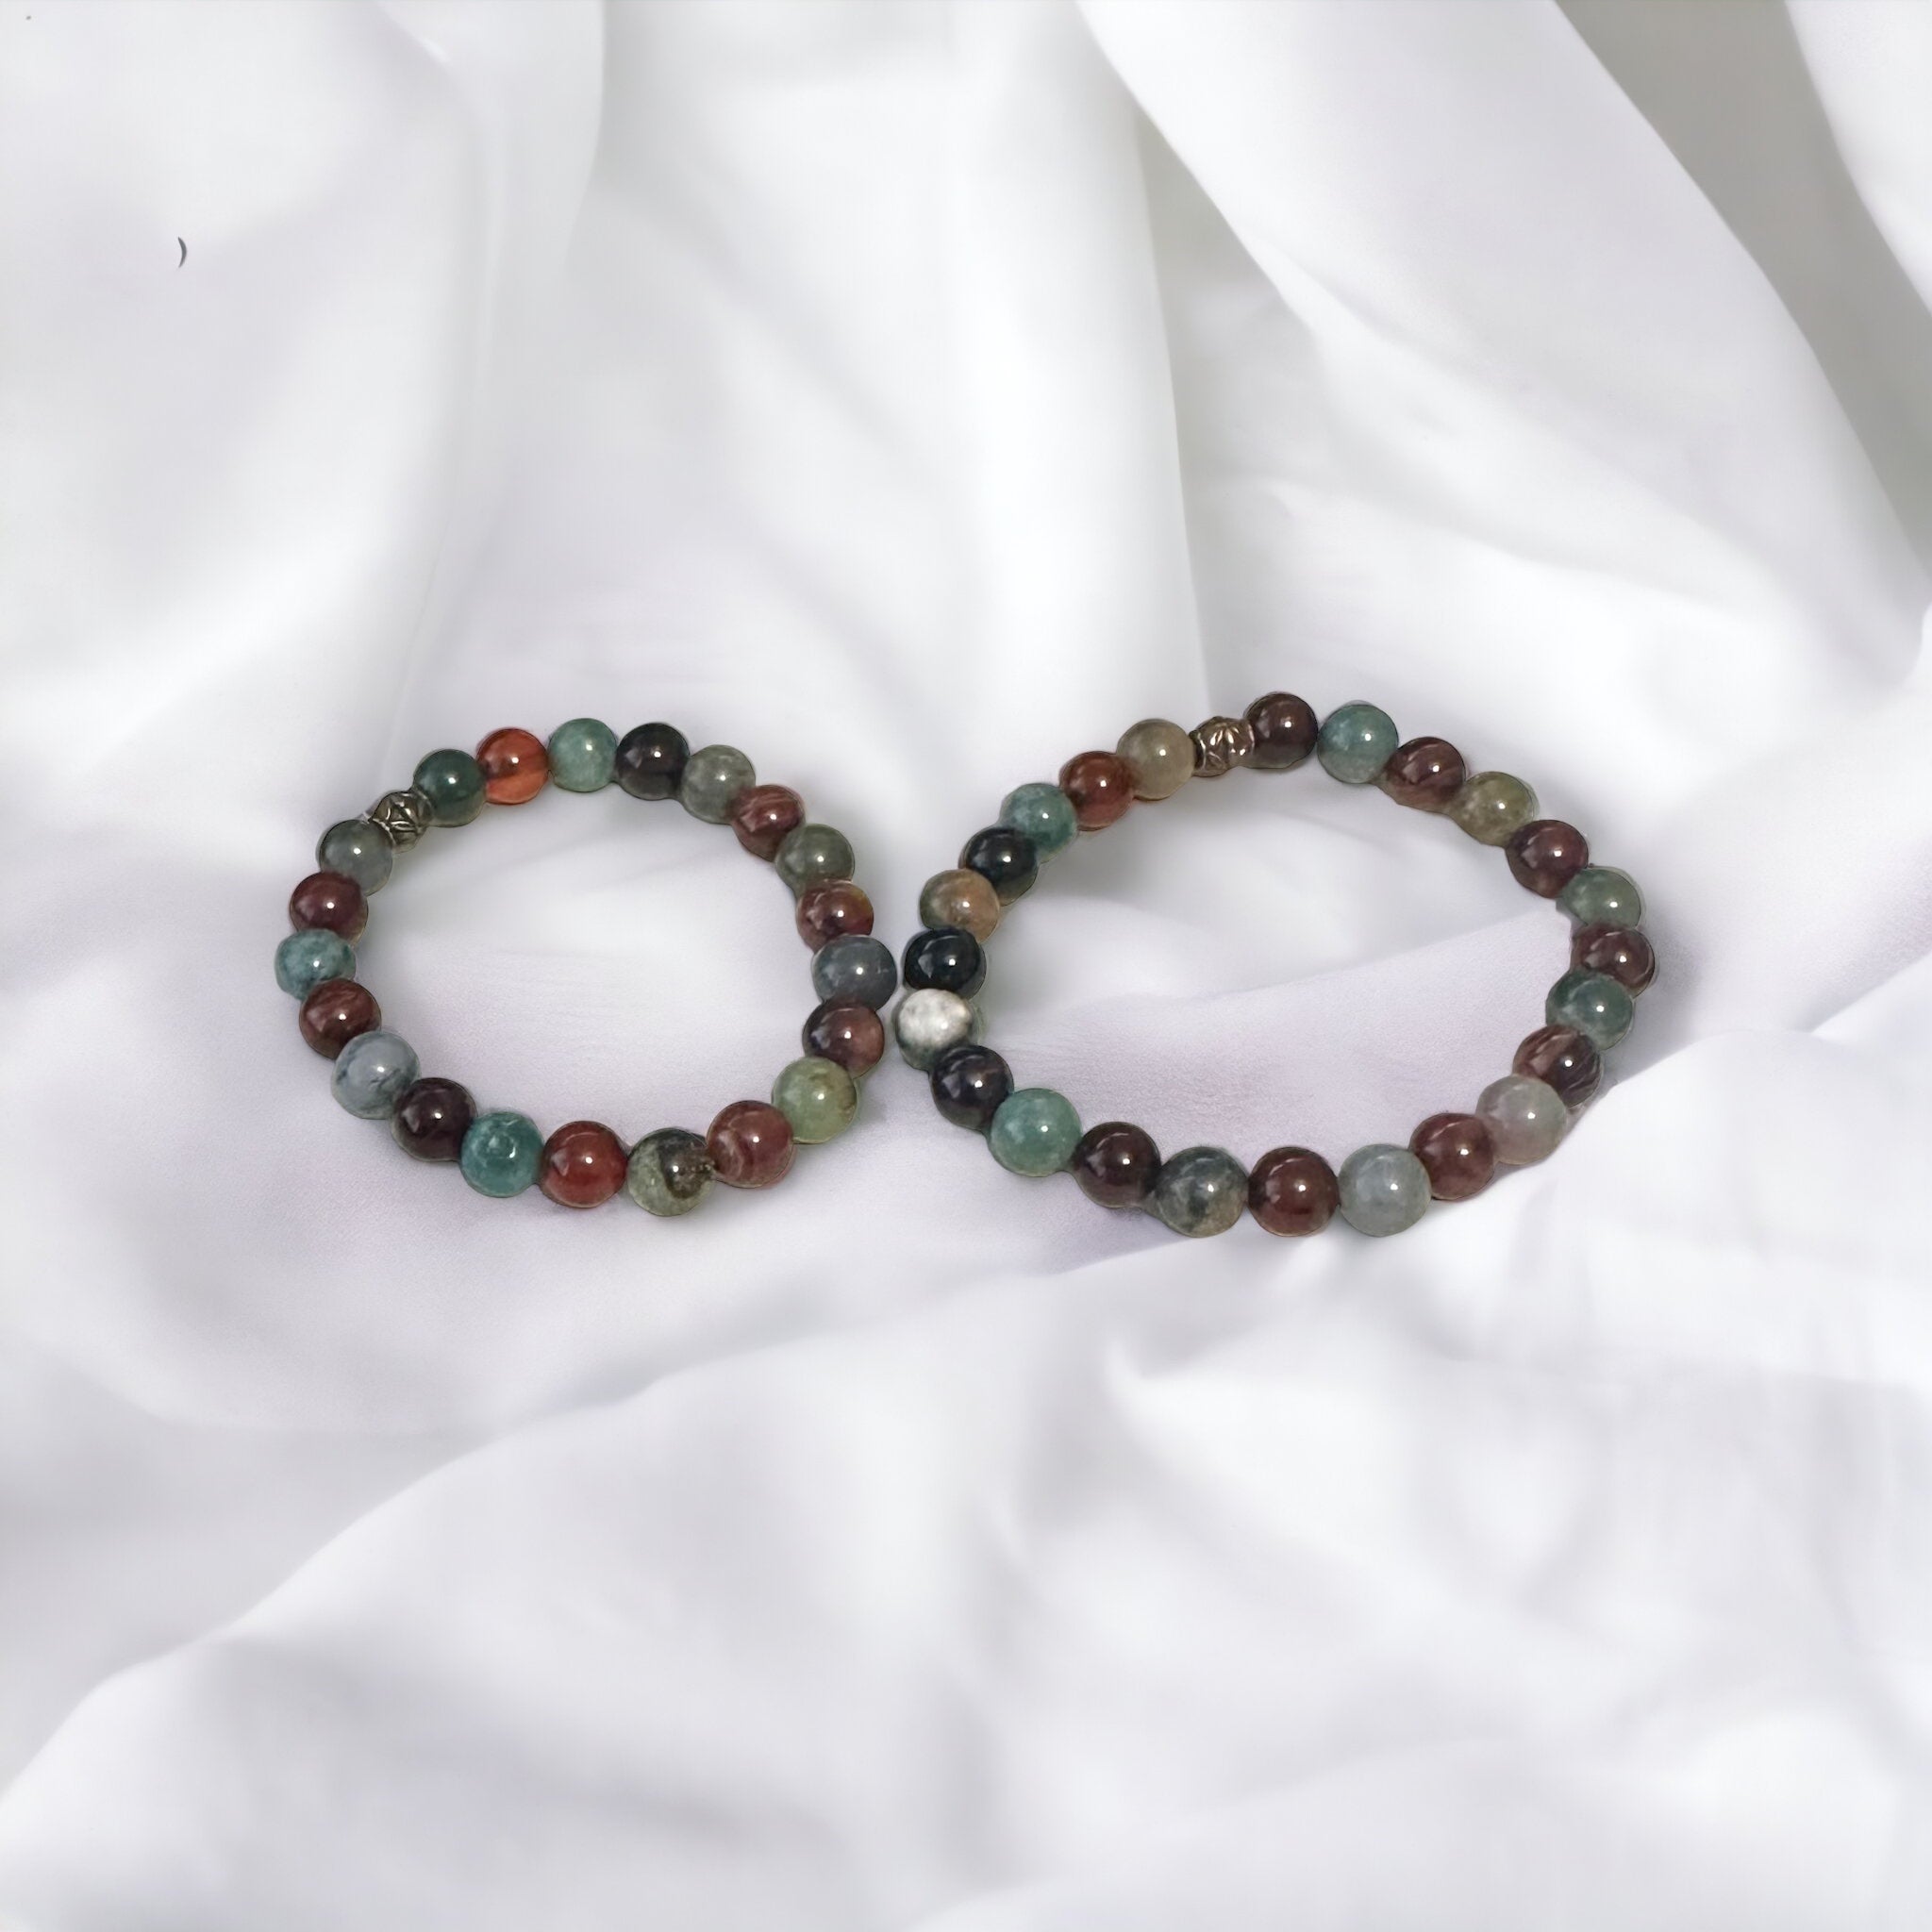 Fancy Beads - 8mm Dream Agate & Indian Agate Bracelet